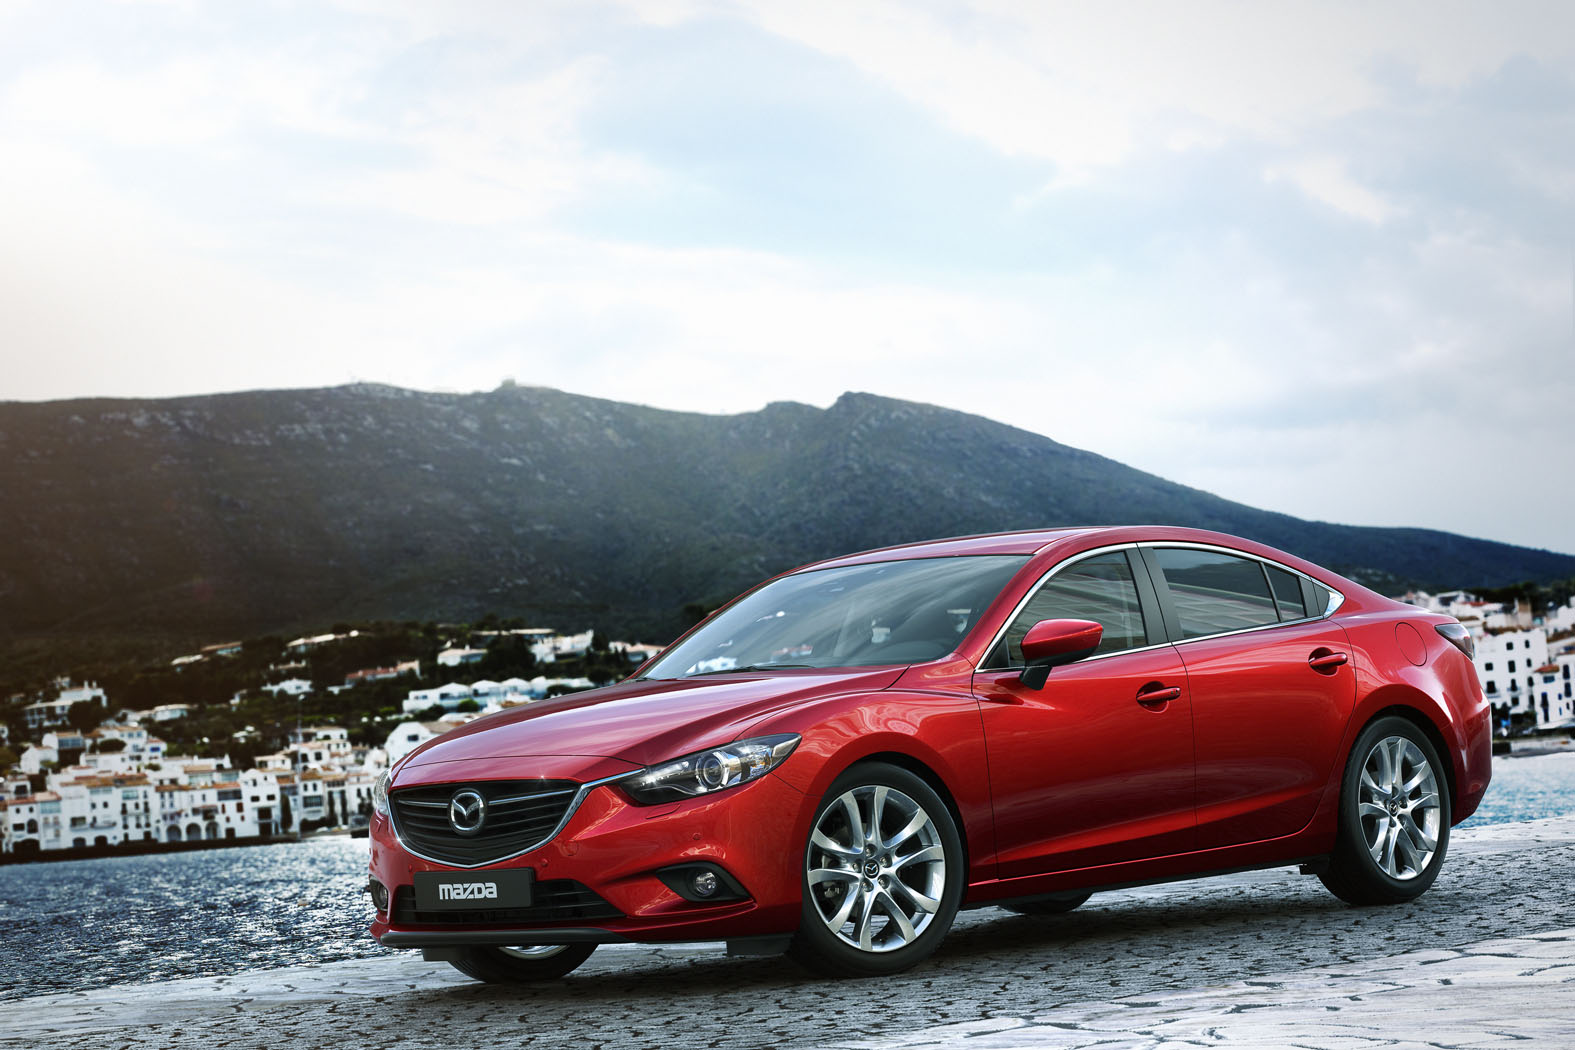 2014 Mazda 6 preview